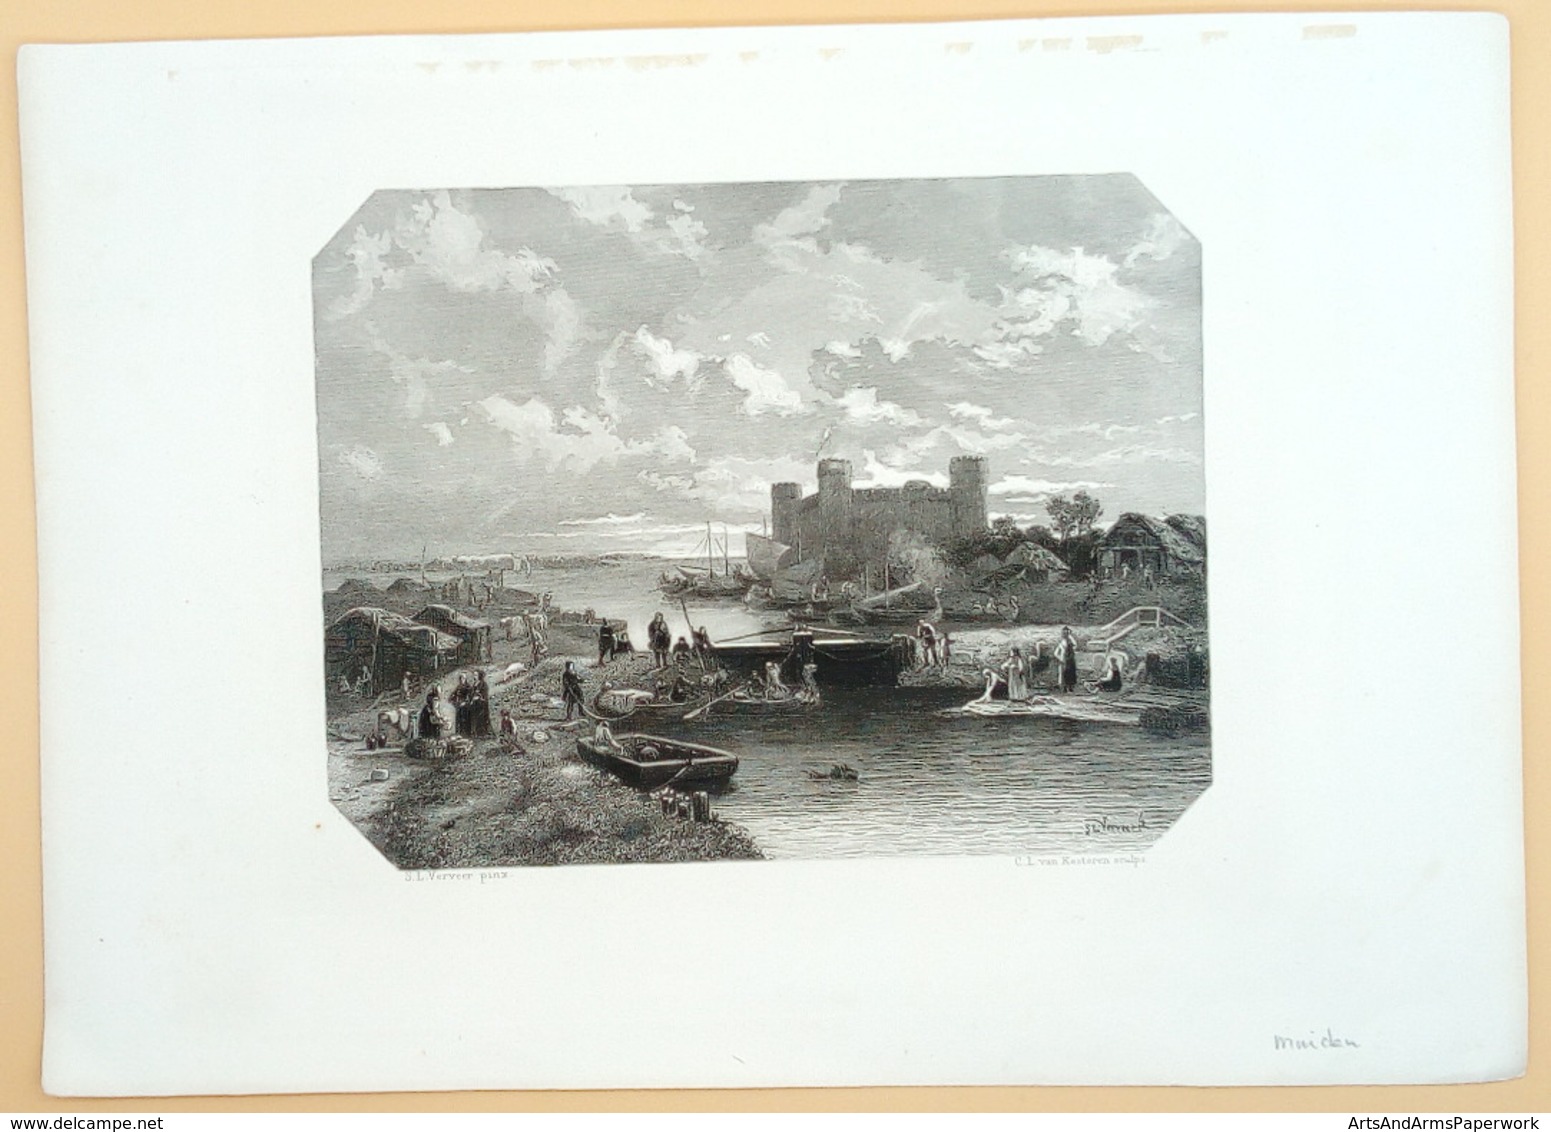 Muiden/ Muiden (NL), 1869, Kesteren, Verveer - Arte